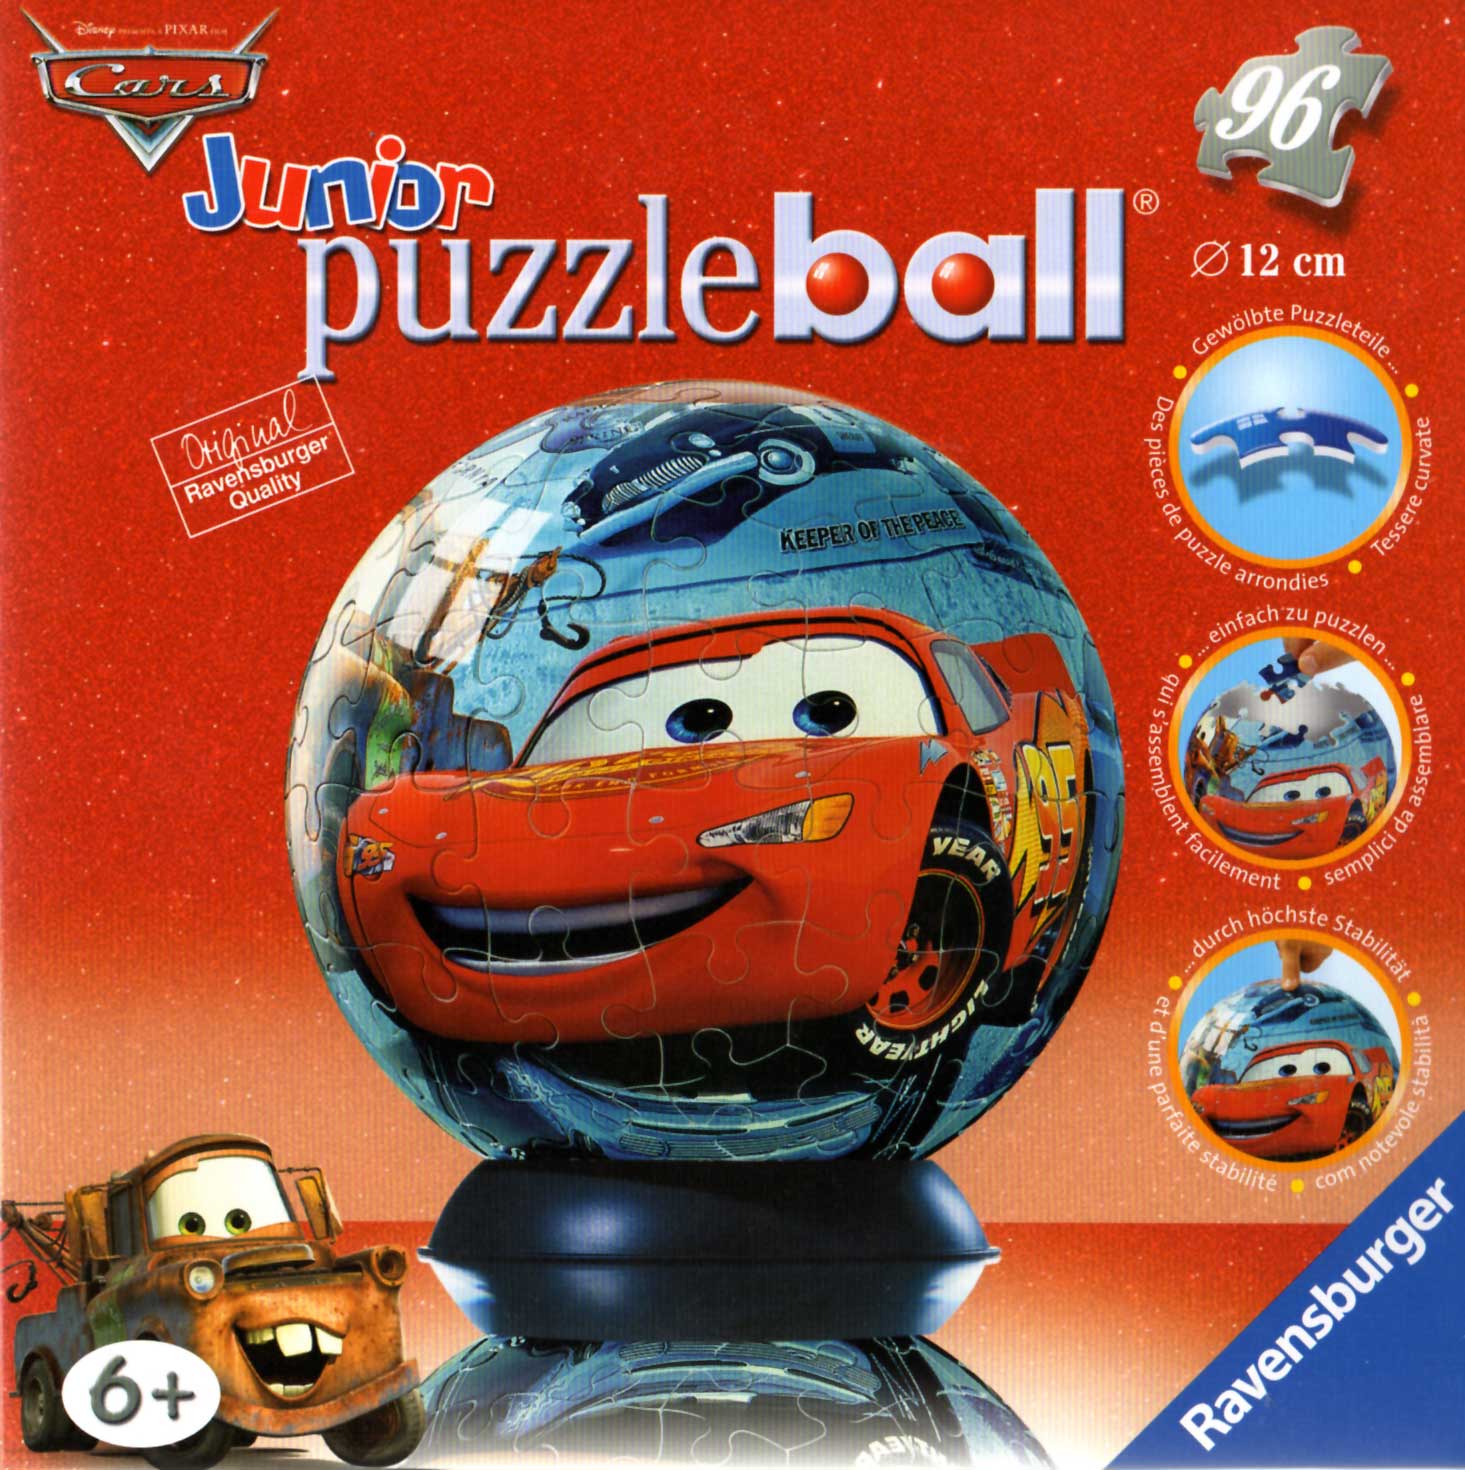 Packaging face Puzzle Ball Ravensburger de 96 pièces (Cars - 2005)